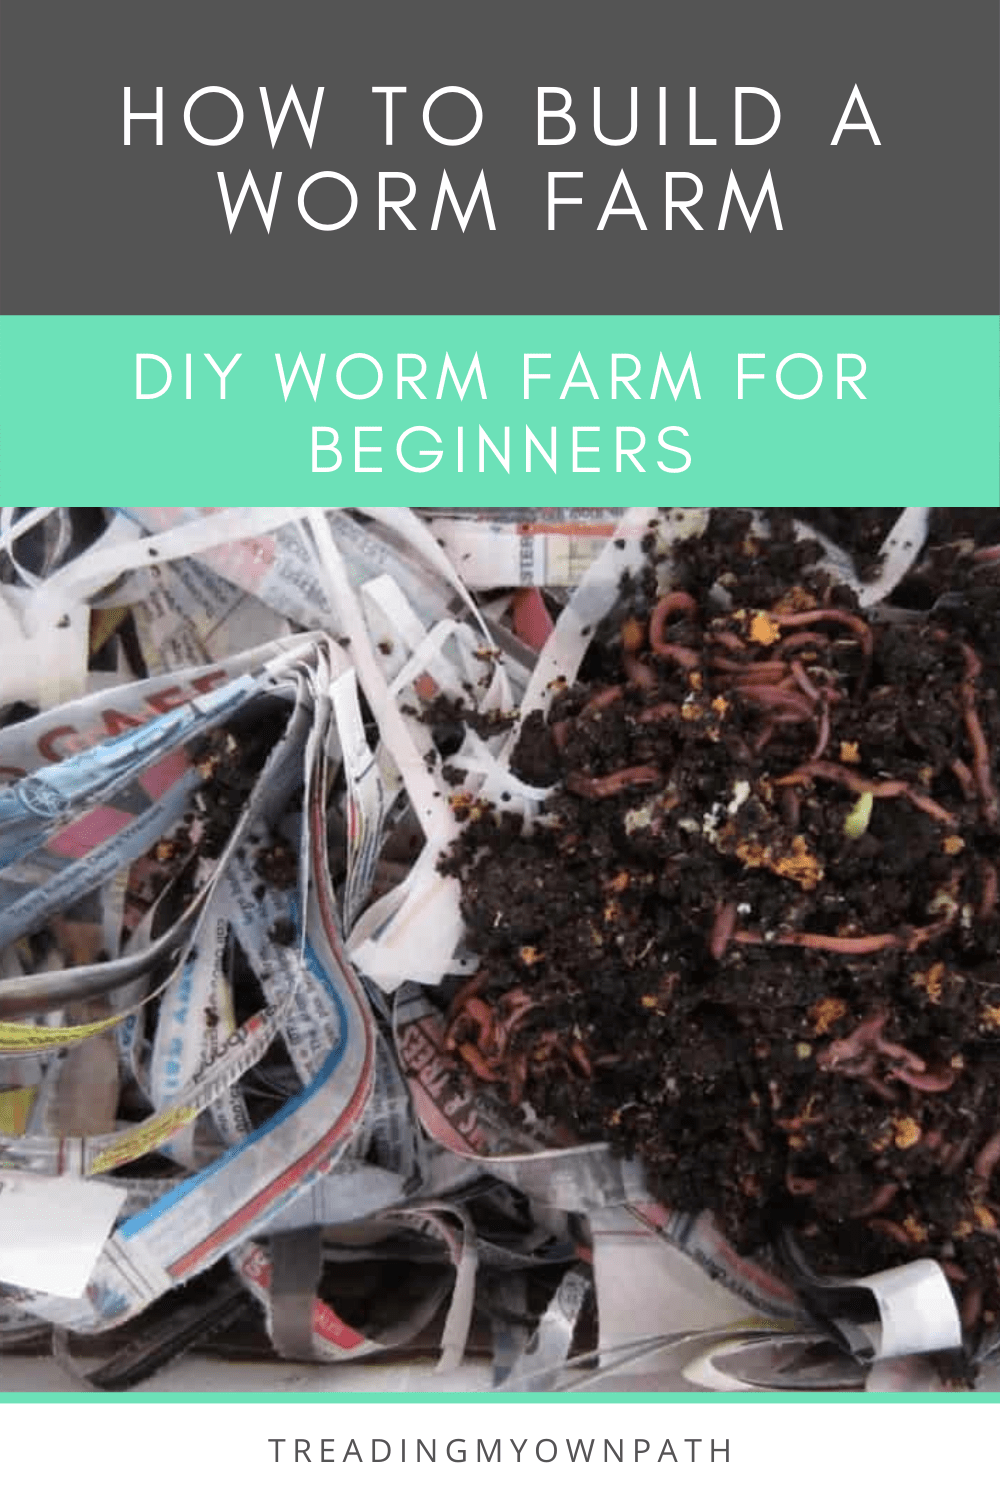 How to Build a DIY Worm Farm